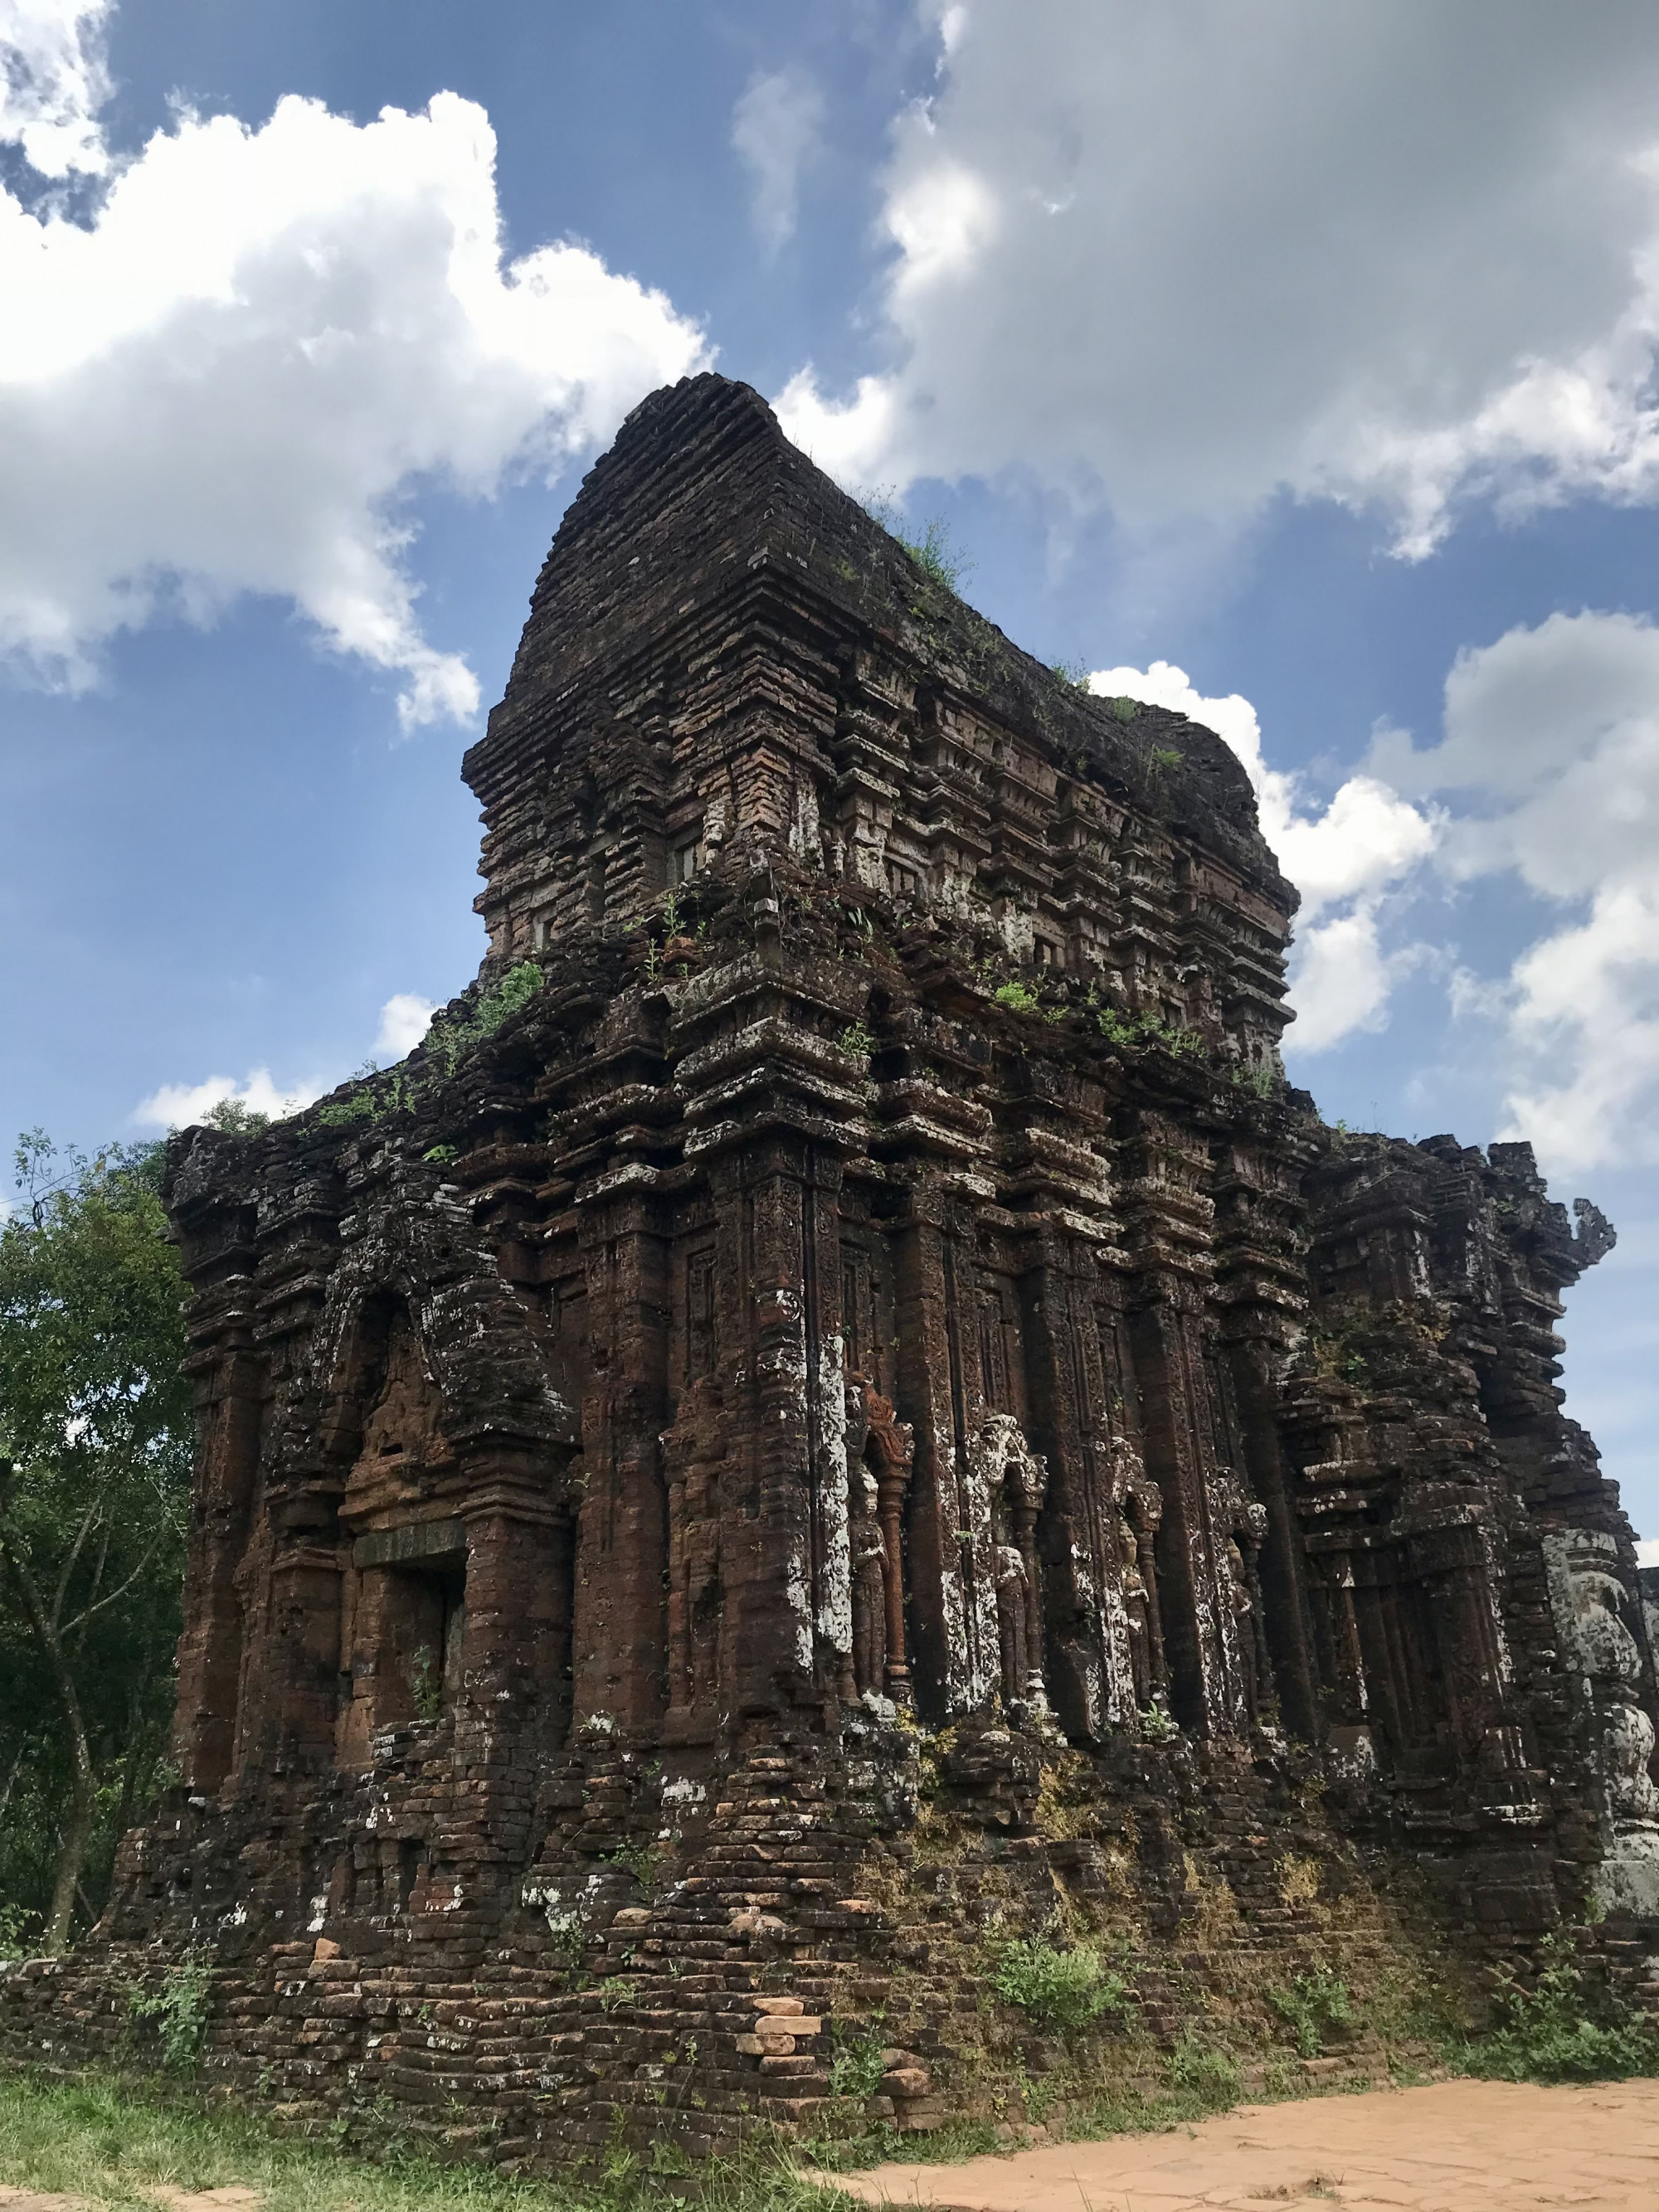 Khu đền tháp ở Thánh địa Mỹ Sơn là điể du lịch nổi tiếng tại Quảng Nam, cung cấp nhiều điều thú vị về văn hoá Ấn Độ